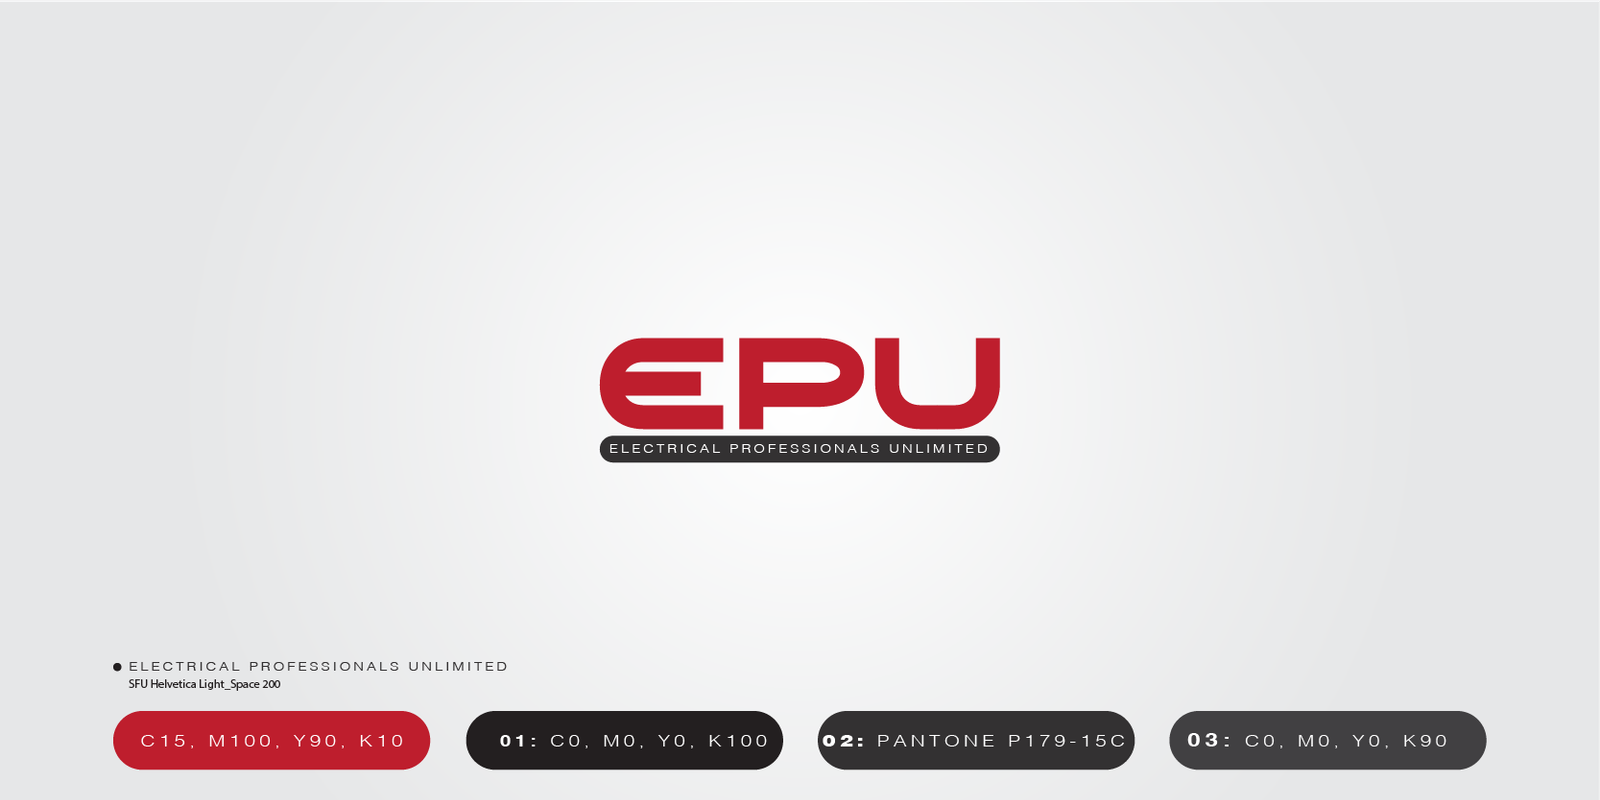 Thiet ke Logo EPU, thietkegiaphuc.com